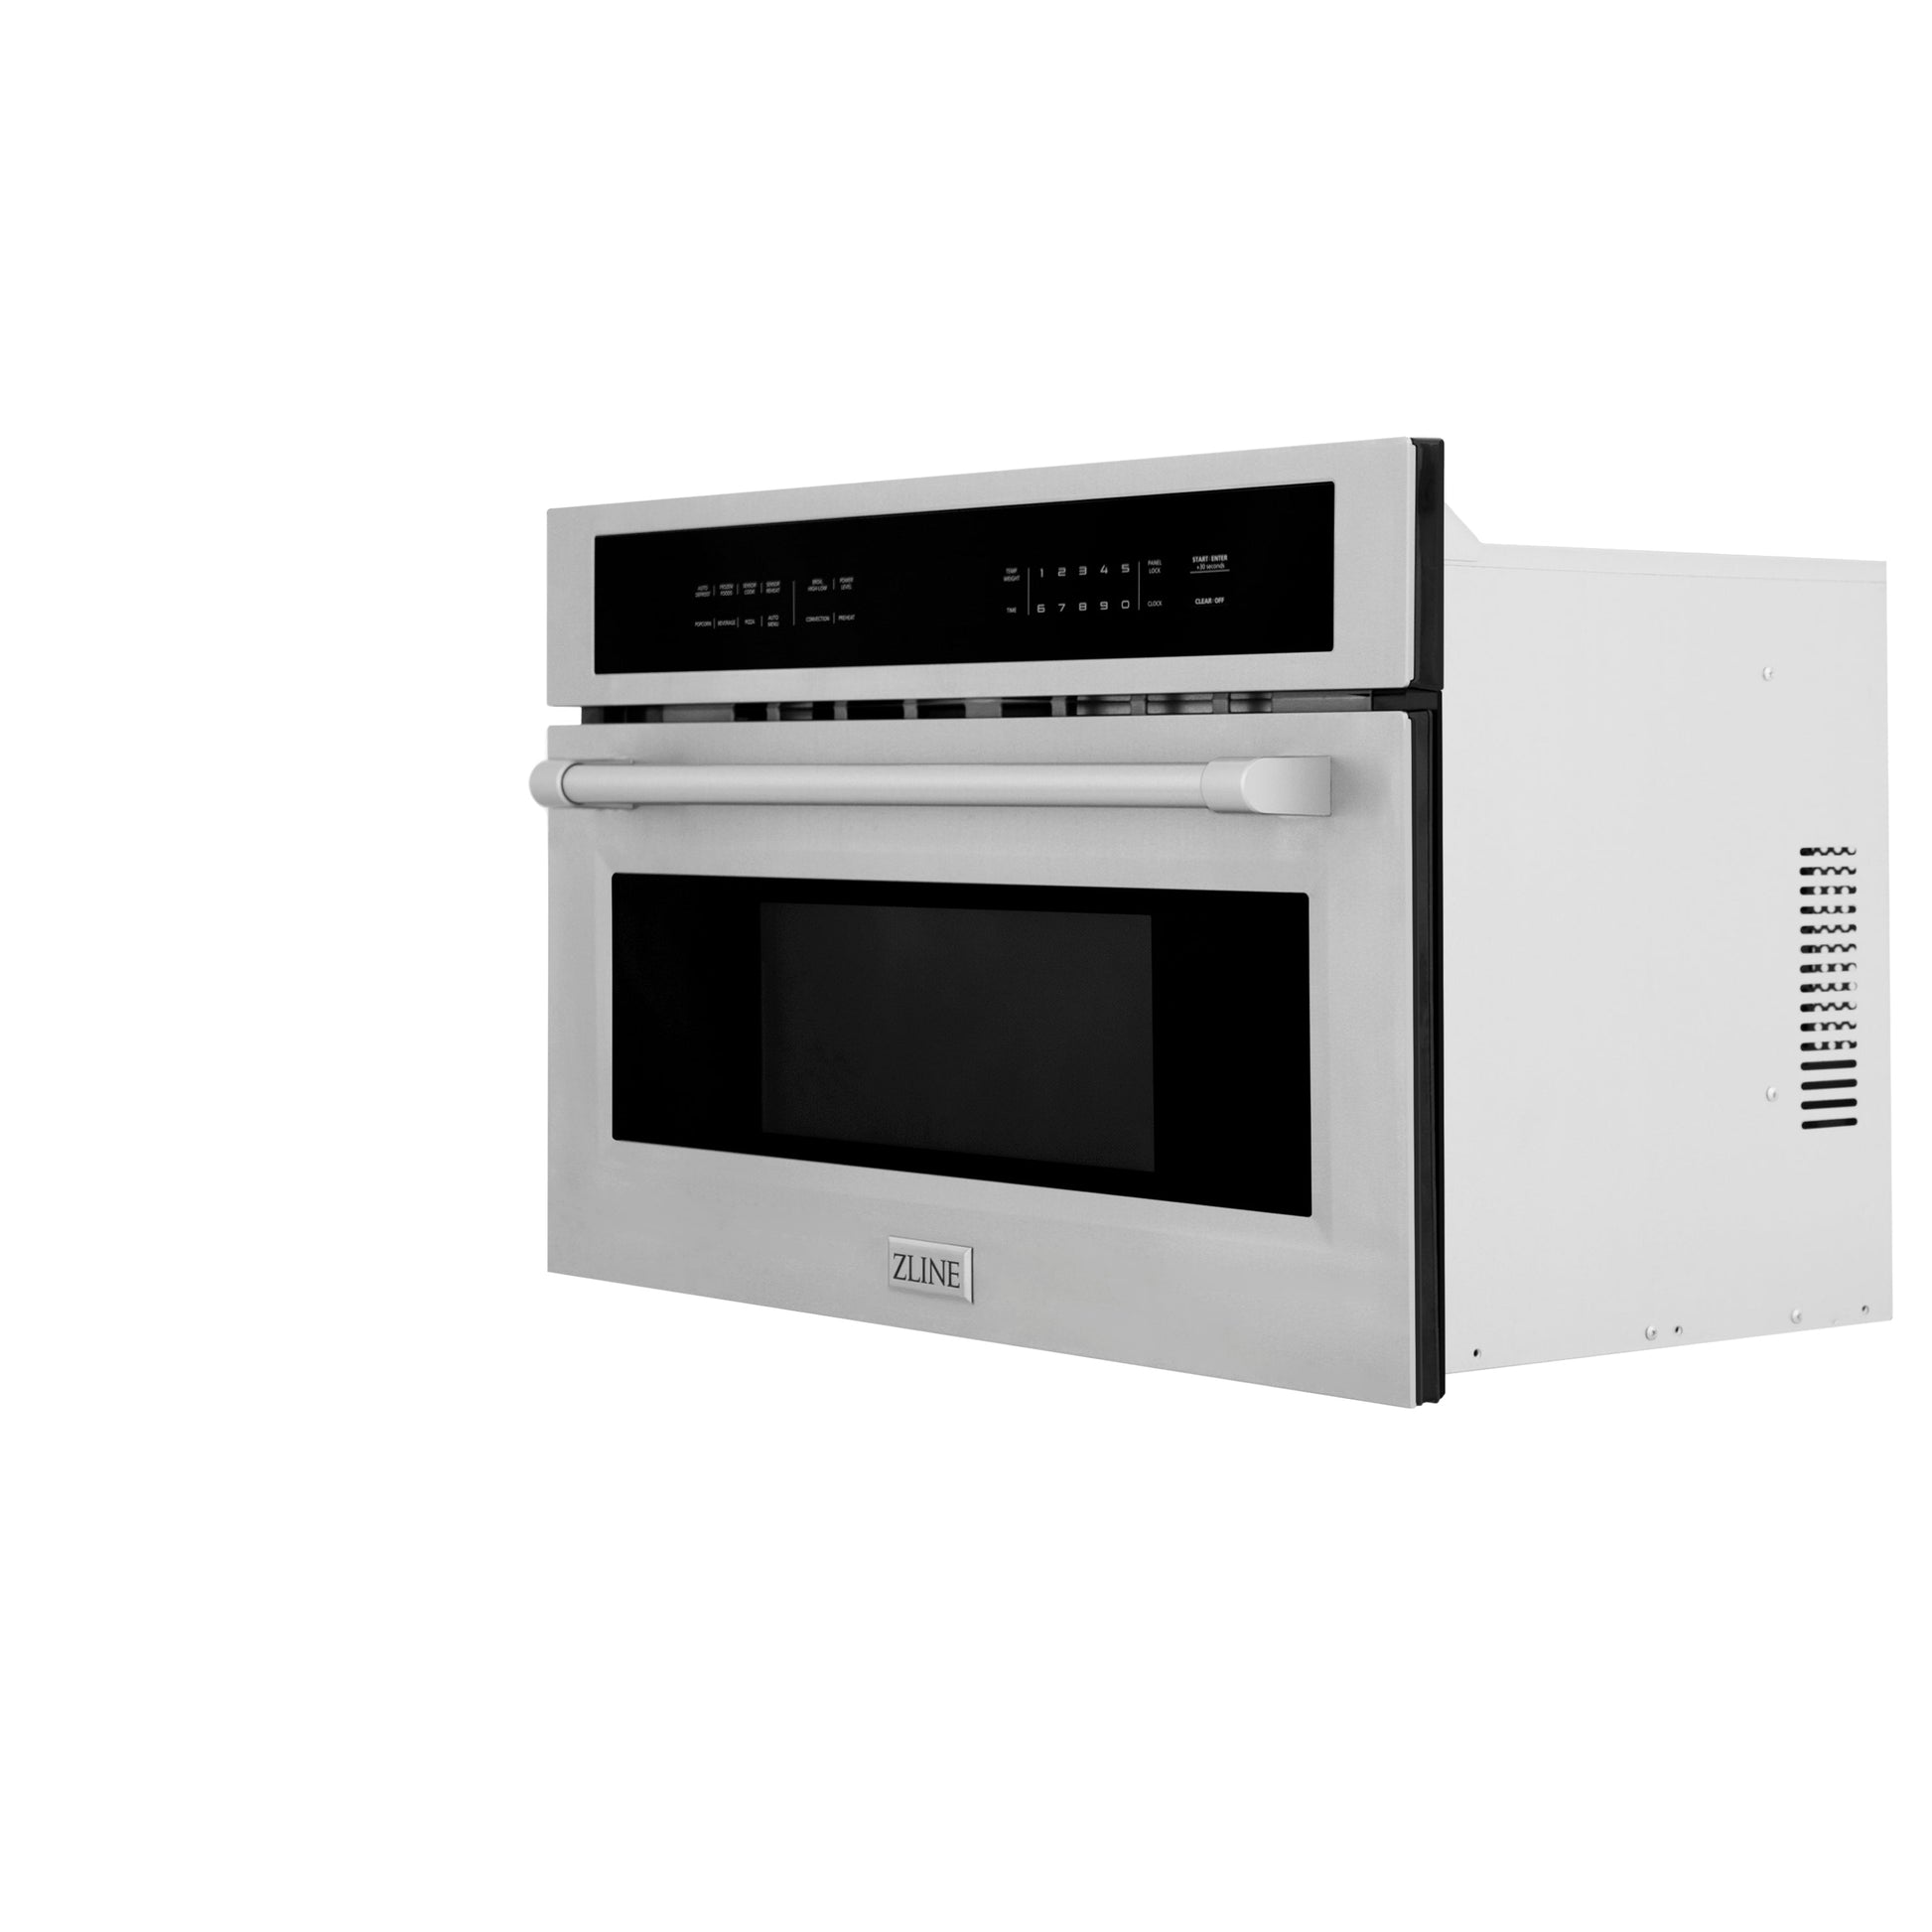 Frigidaire Gallery - 30 Built-in Microwave Oven with Drop-Down Door